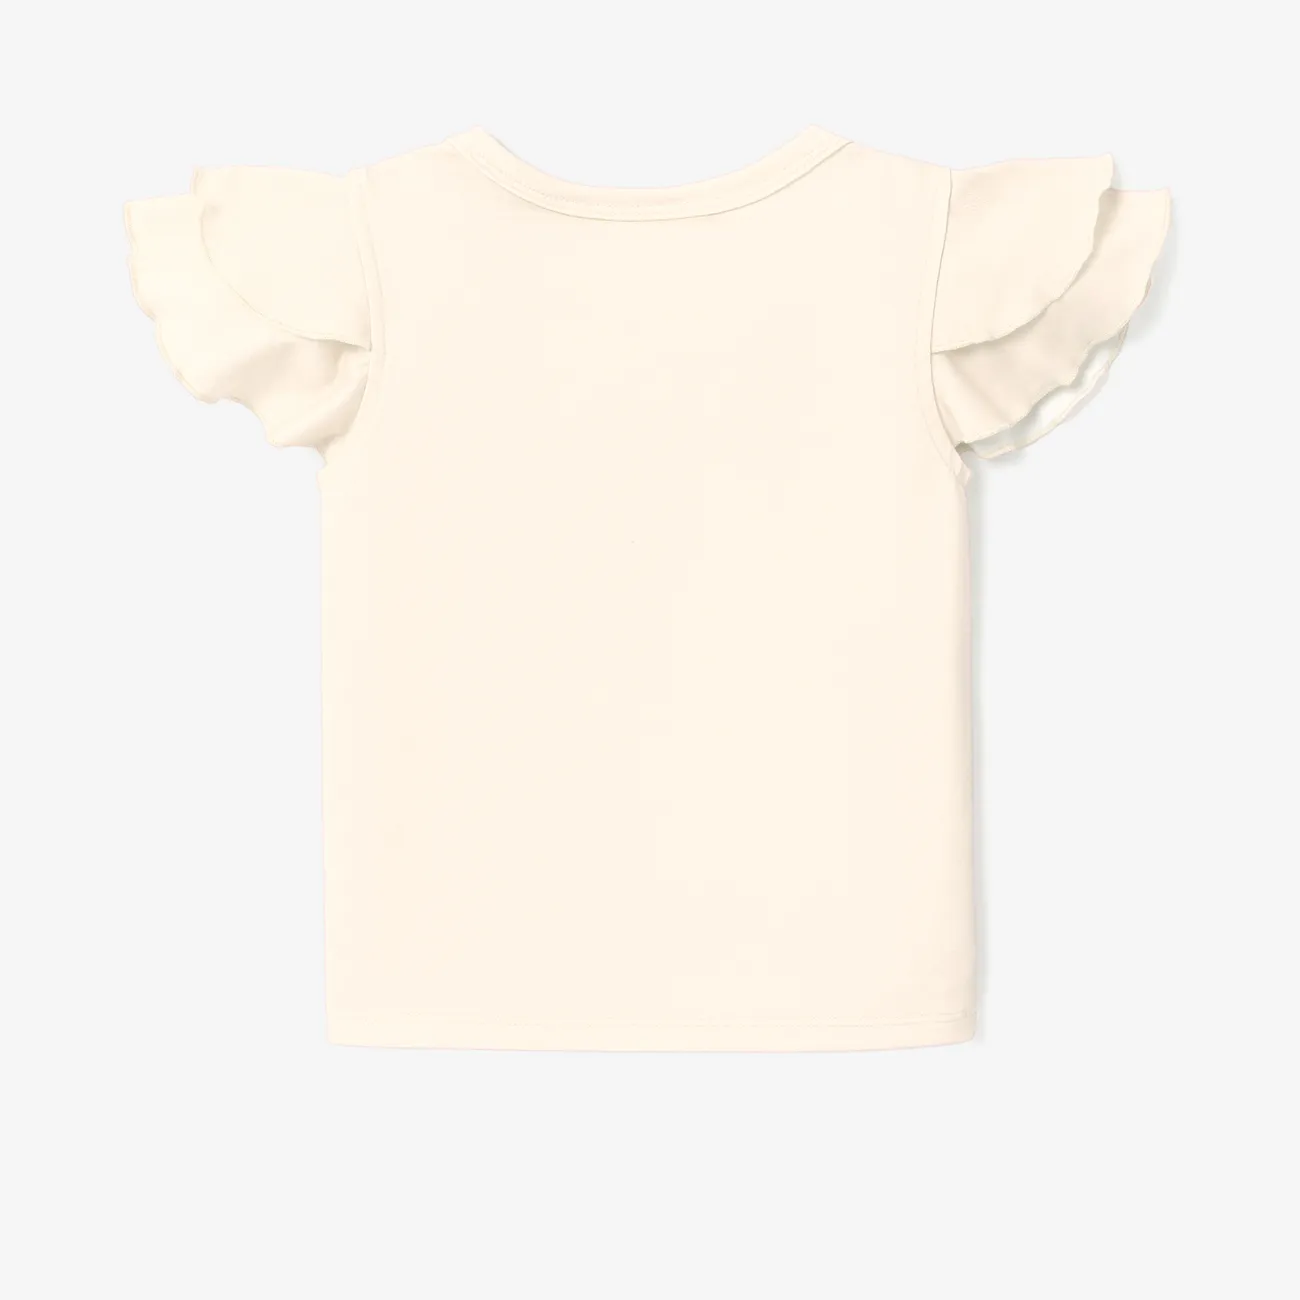 Disney Princess Toddler Girl Naia™ Character Print Ruffled Short-sleeve Tee White big image 1